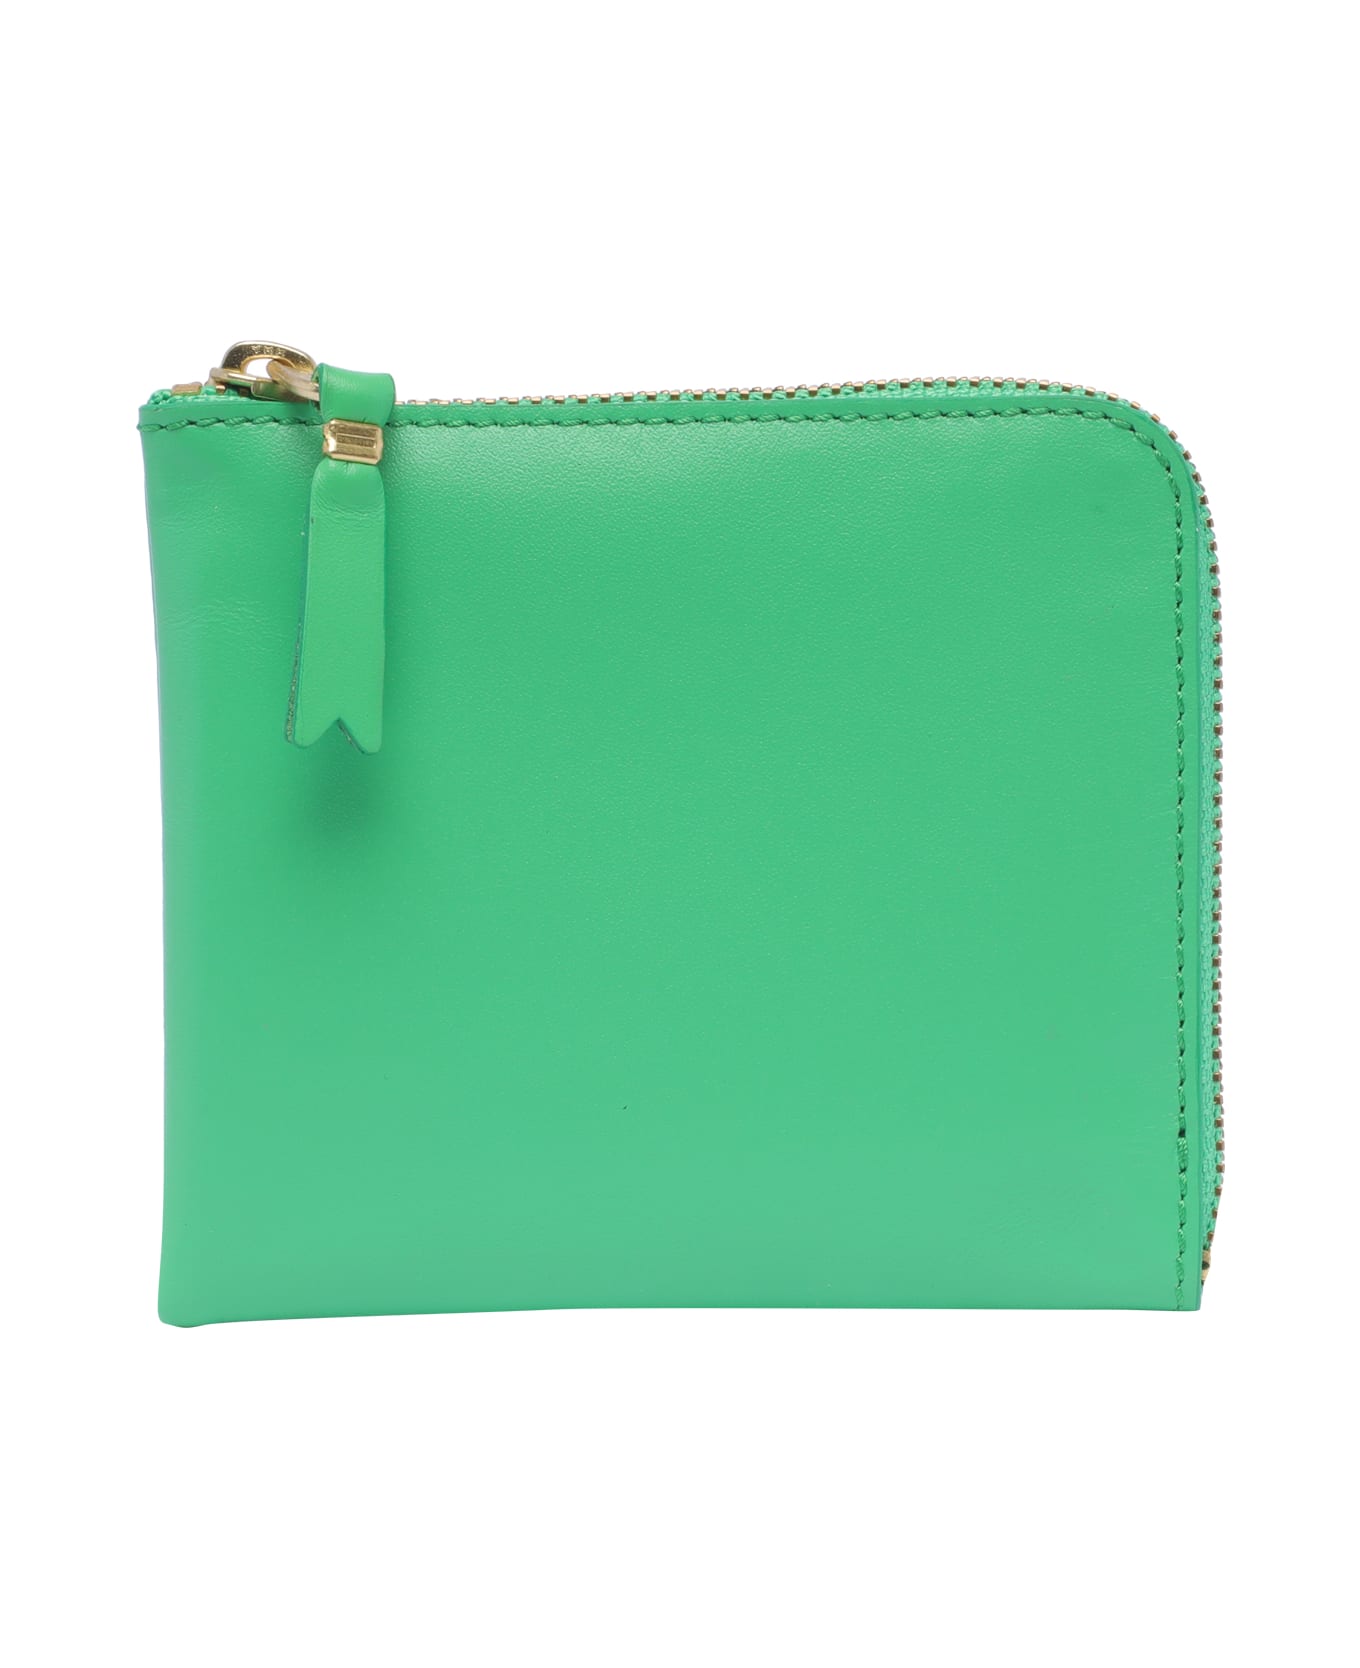 Comme des Garçons Wallet Classic Leather Line Wallet - Green